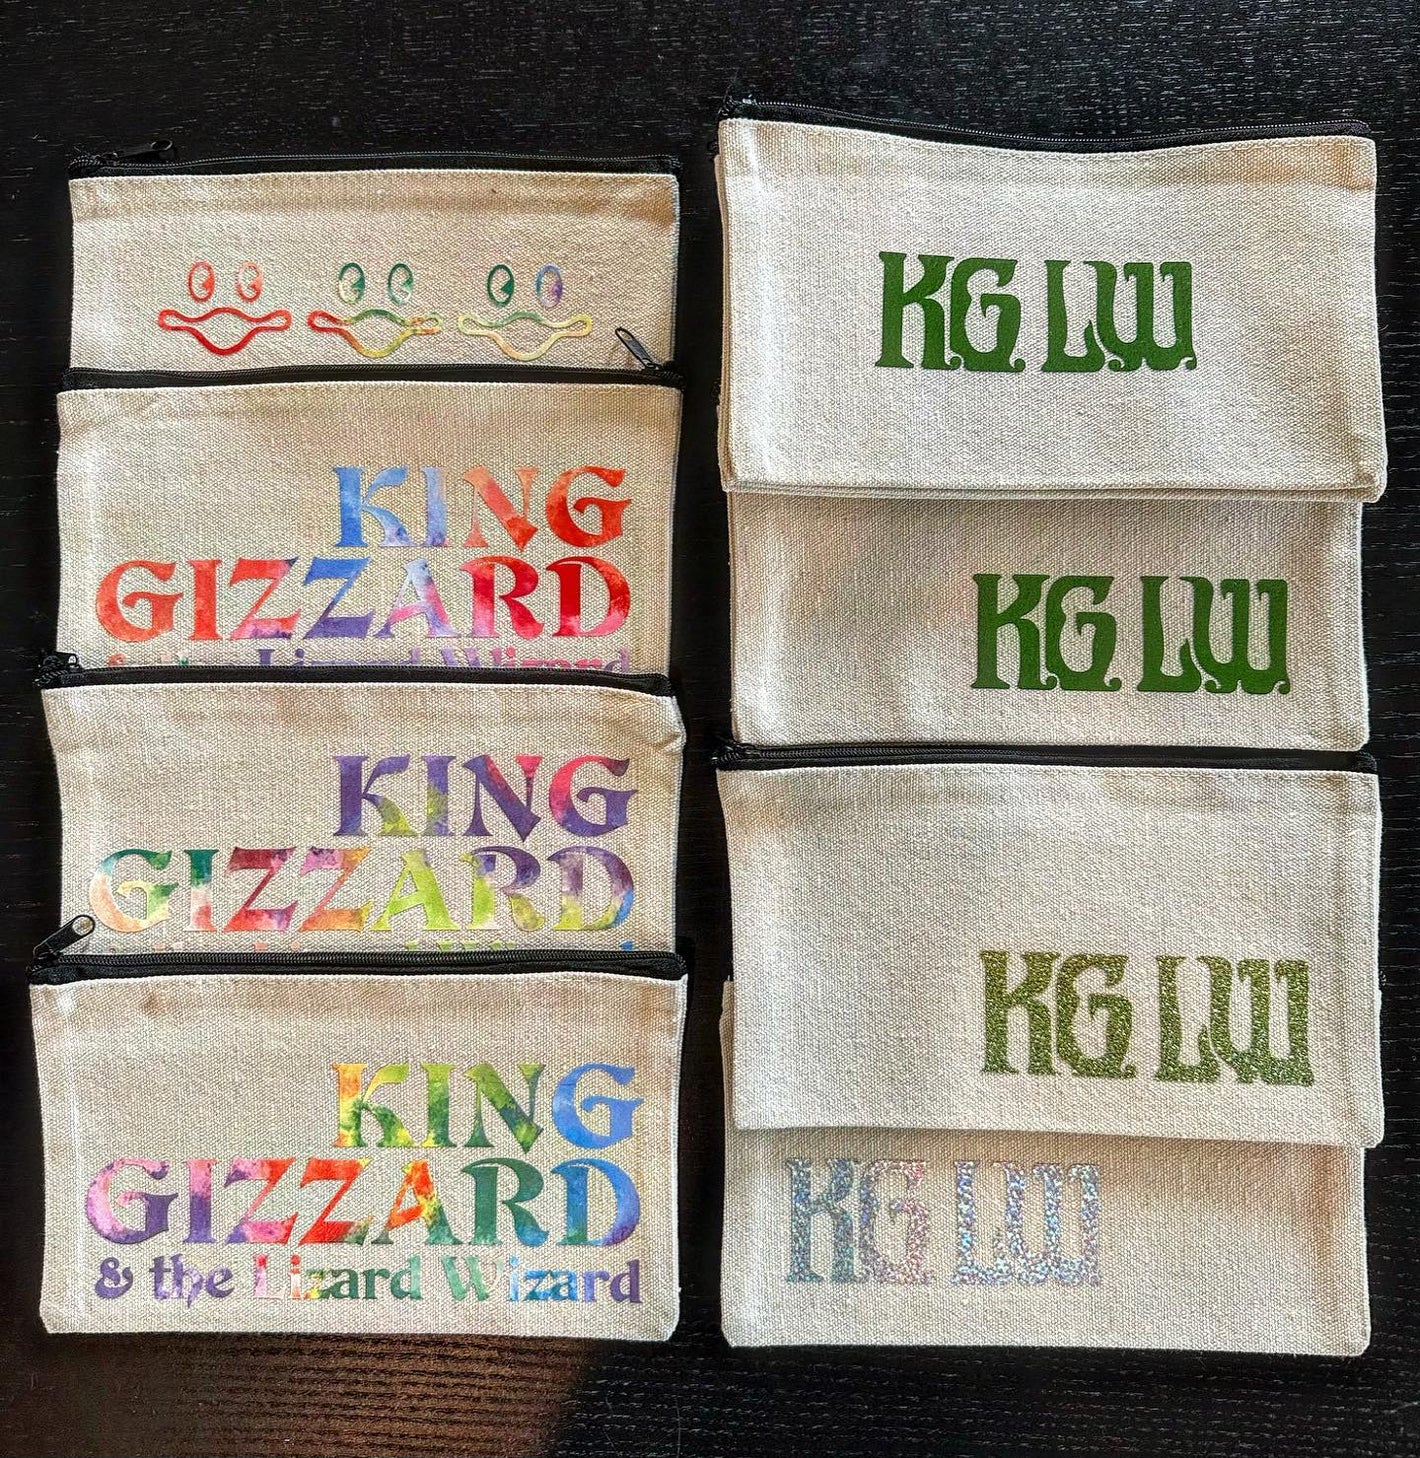 King Gizzard & The Lizard Wizard, KGLW, & Fishies zipper pouches